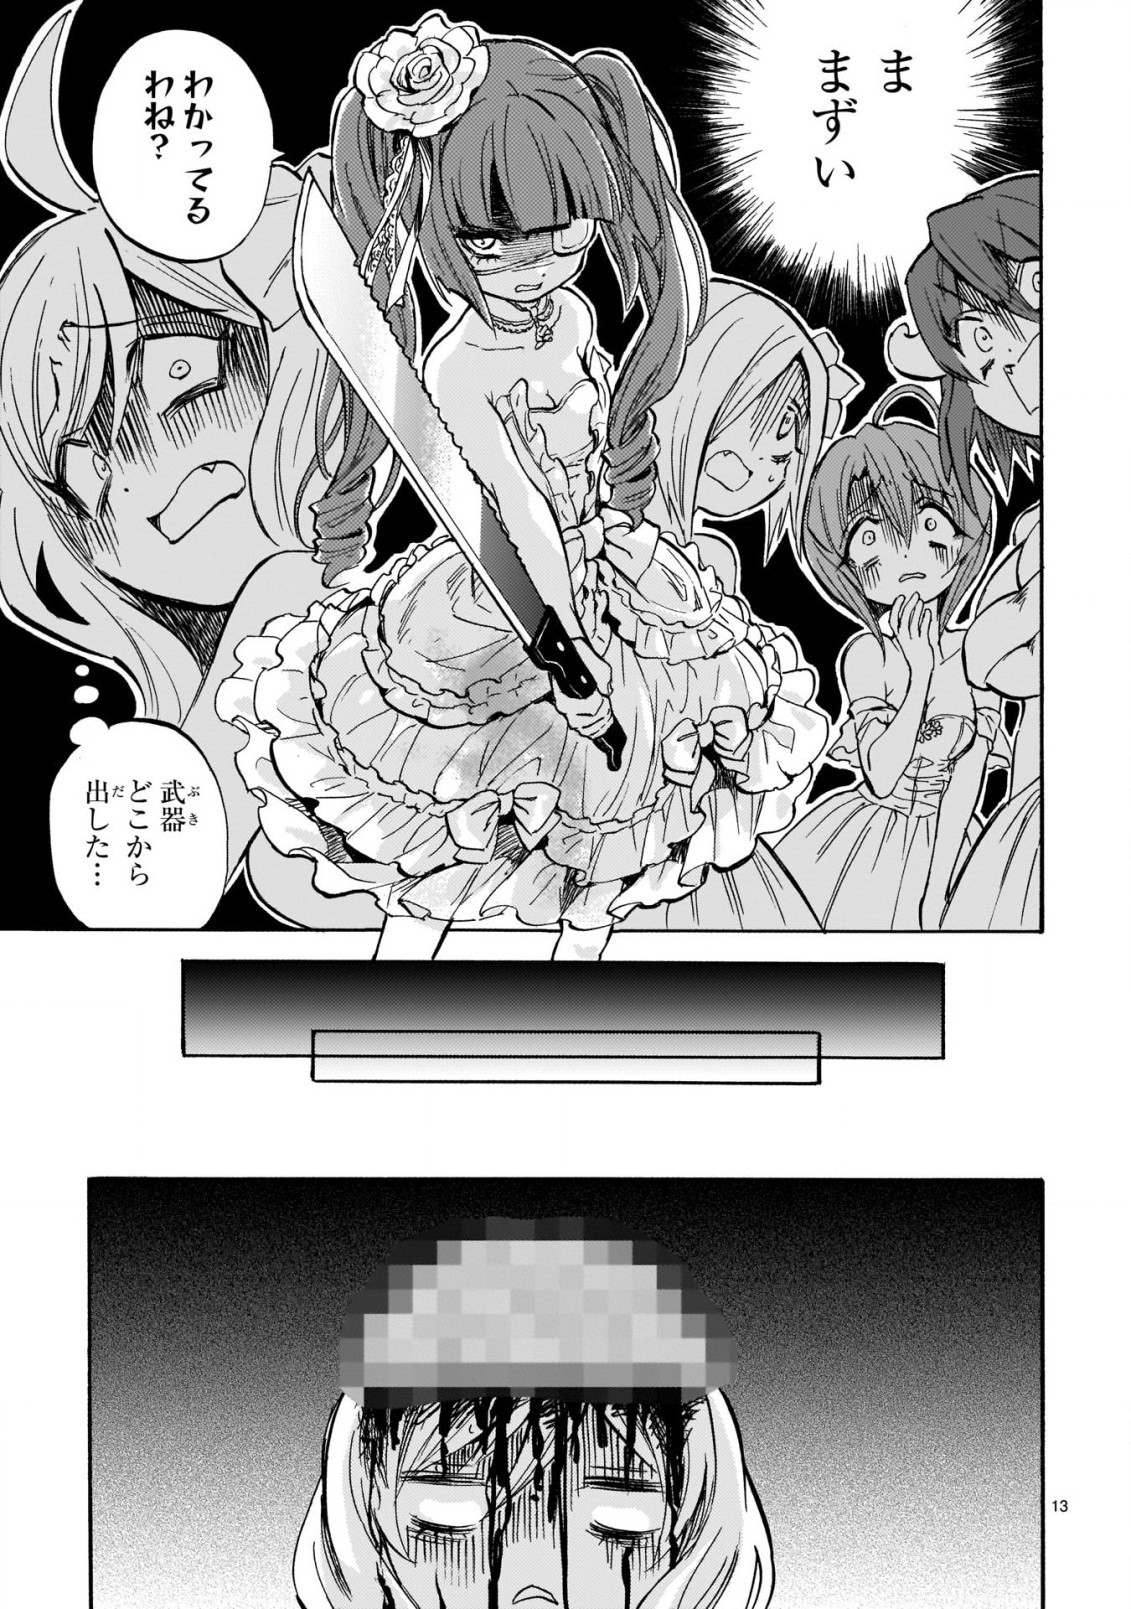 Jashin-chan Dropkick - Chapter 212 - Page 14